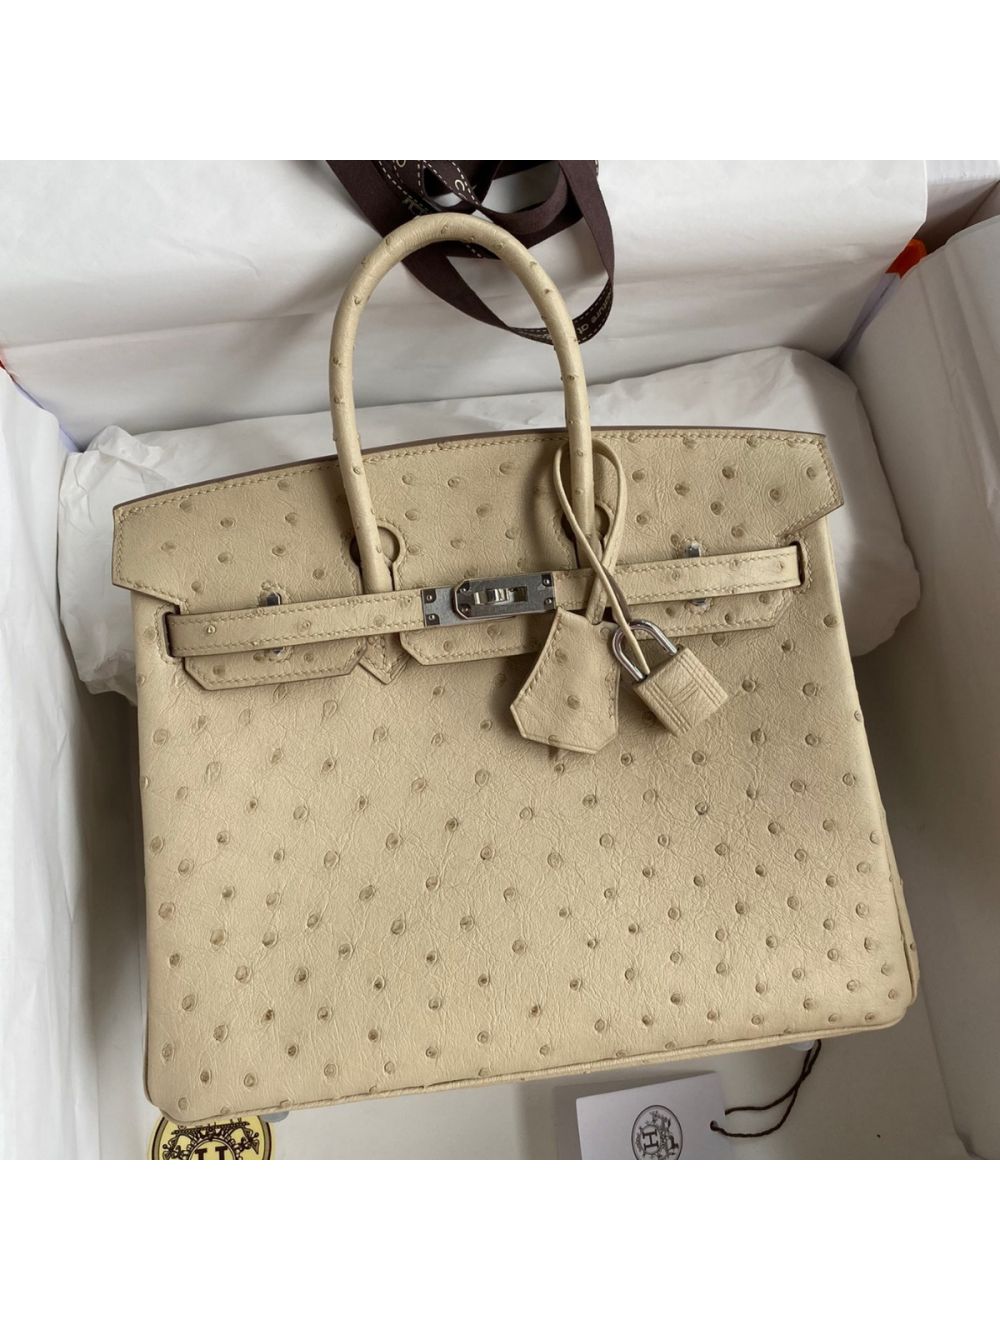 Replica Hermes Birkin 25 Retourne Handmade Bag In Parchemin Ostrich Leather